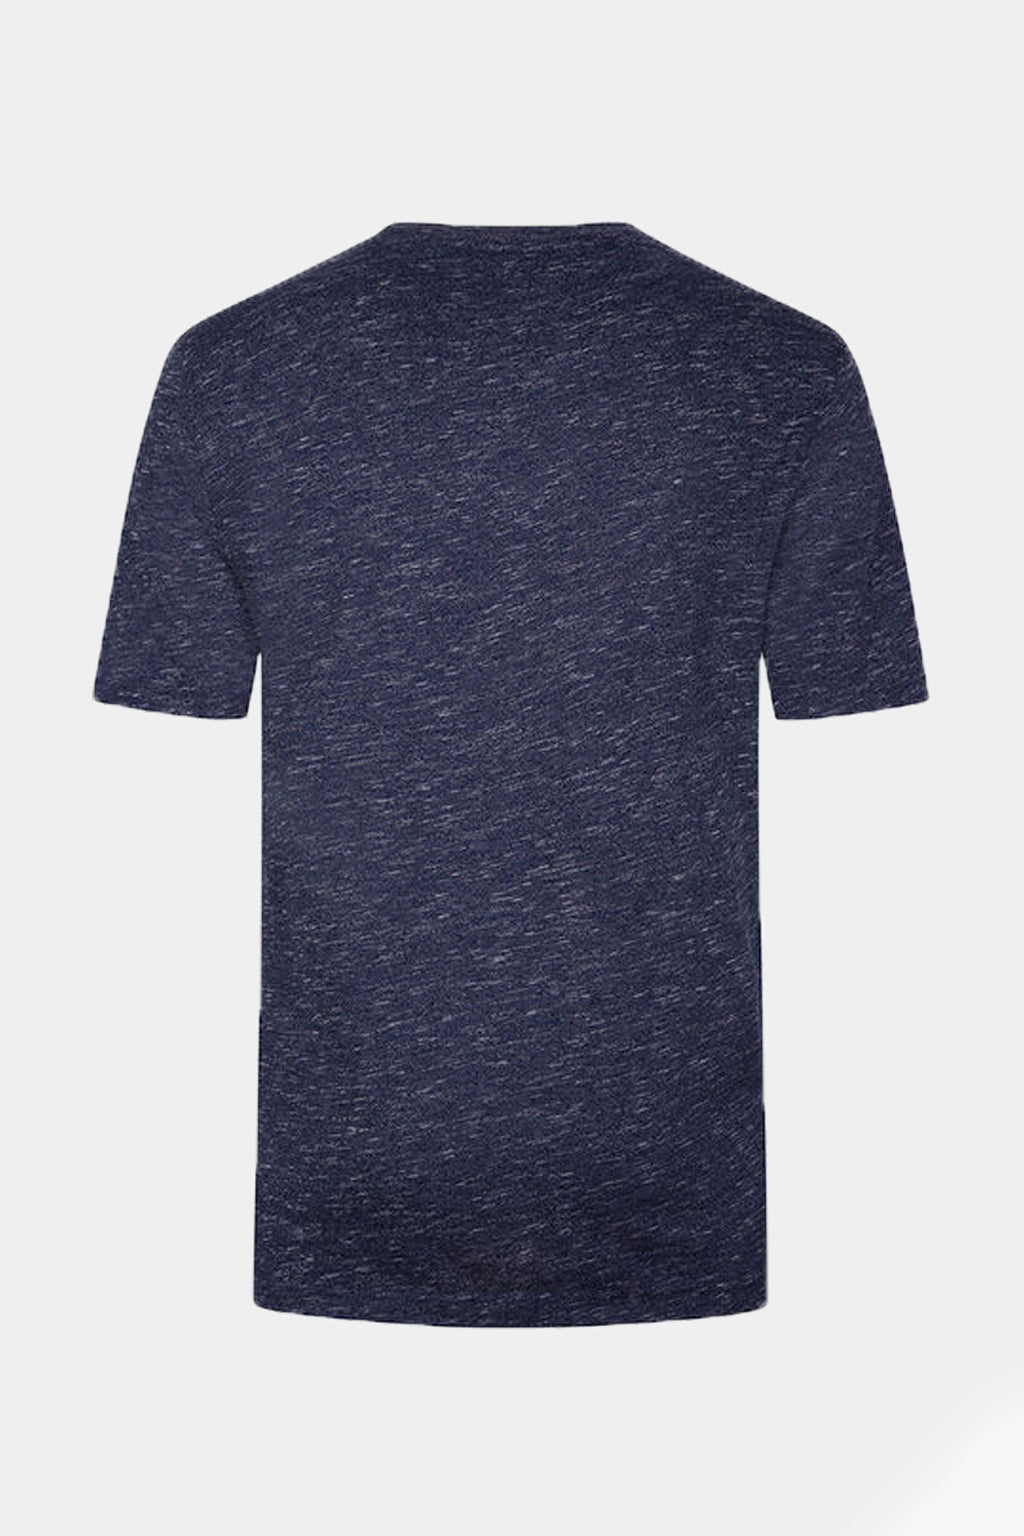 Gregnorman - Ultra-Comfort Shark T-Shirt